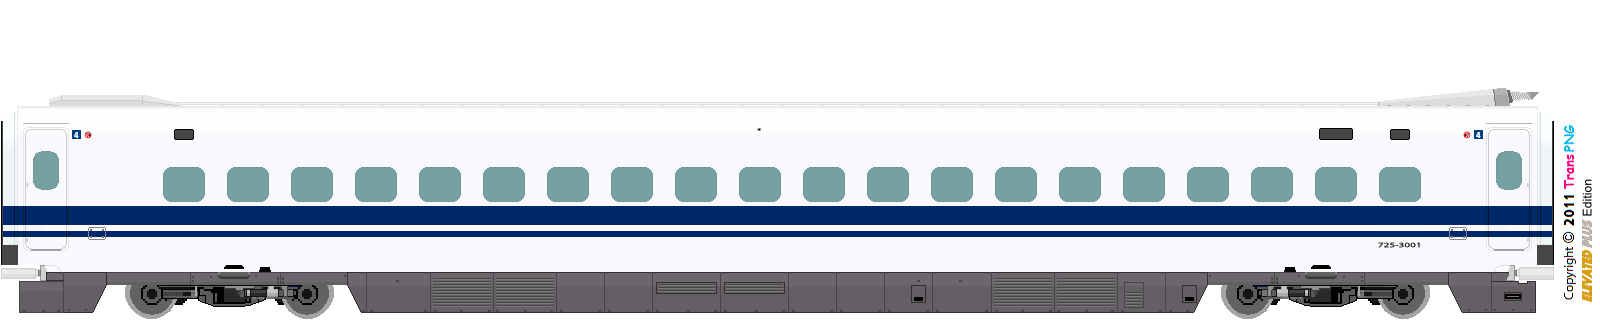 9012 - [9012] 西日本旅客鉄道 52287585753_fc48e4316a_o